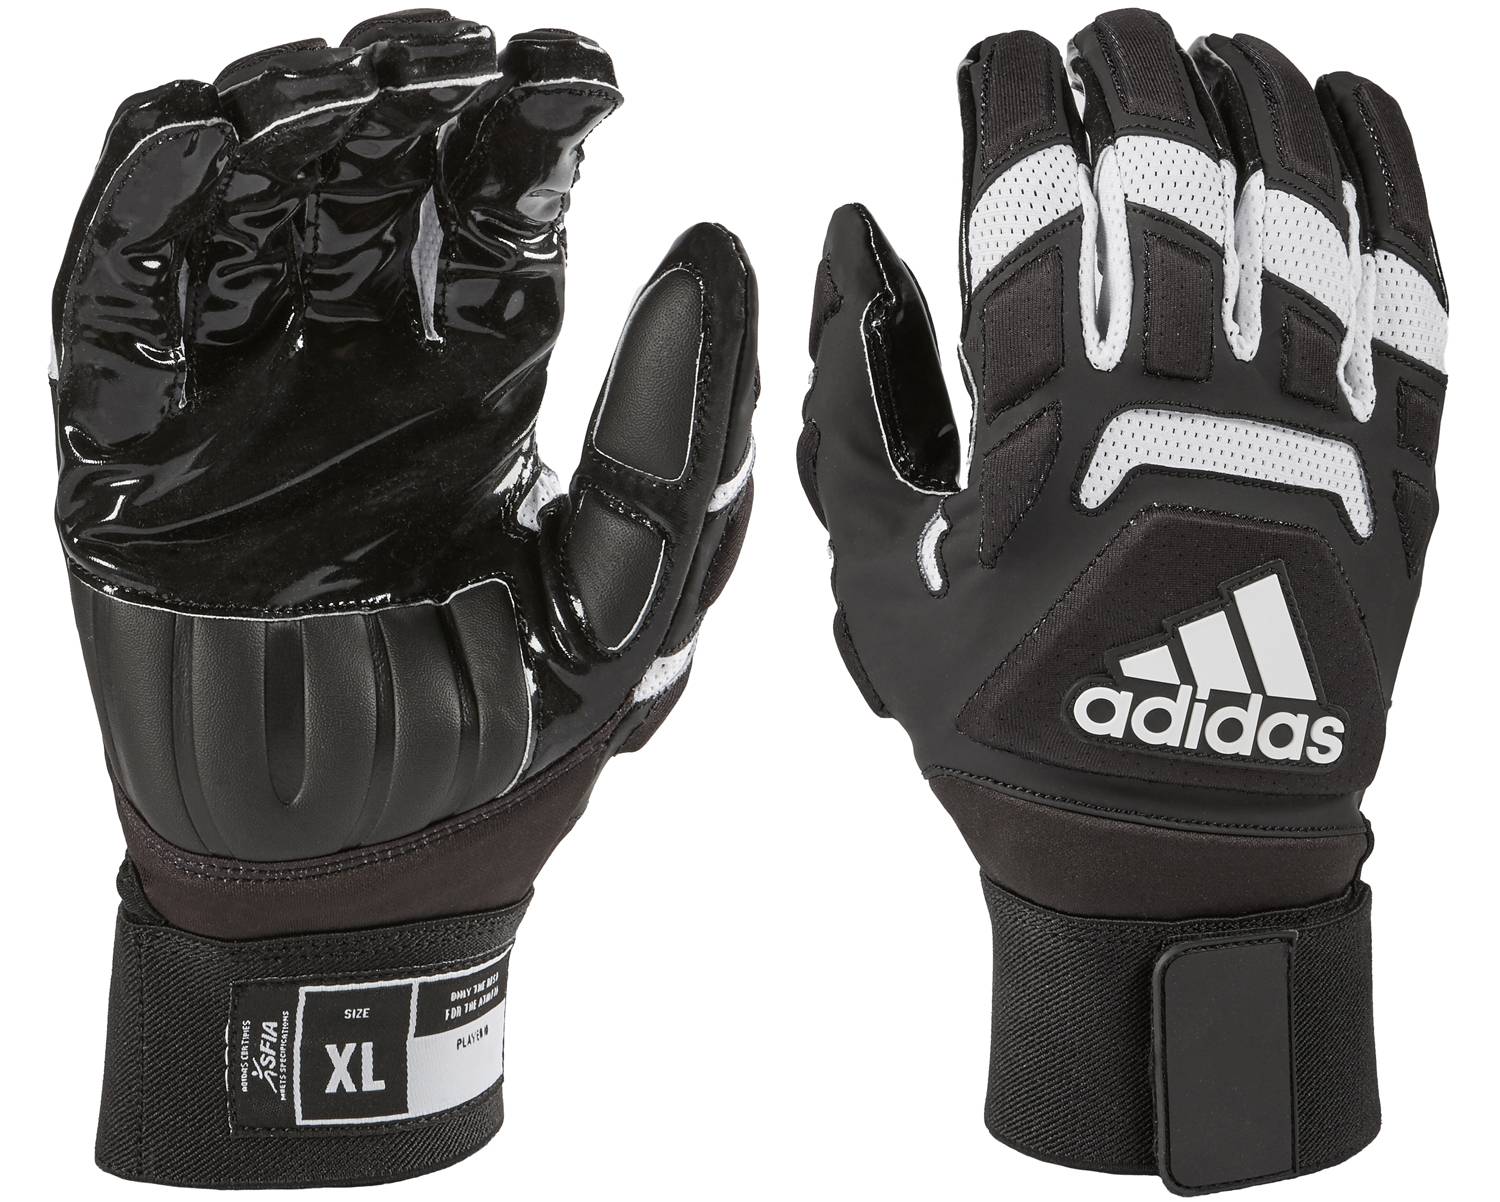 freak max lineman gloves